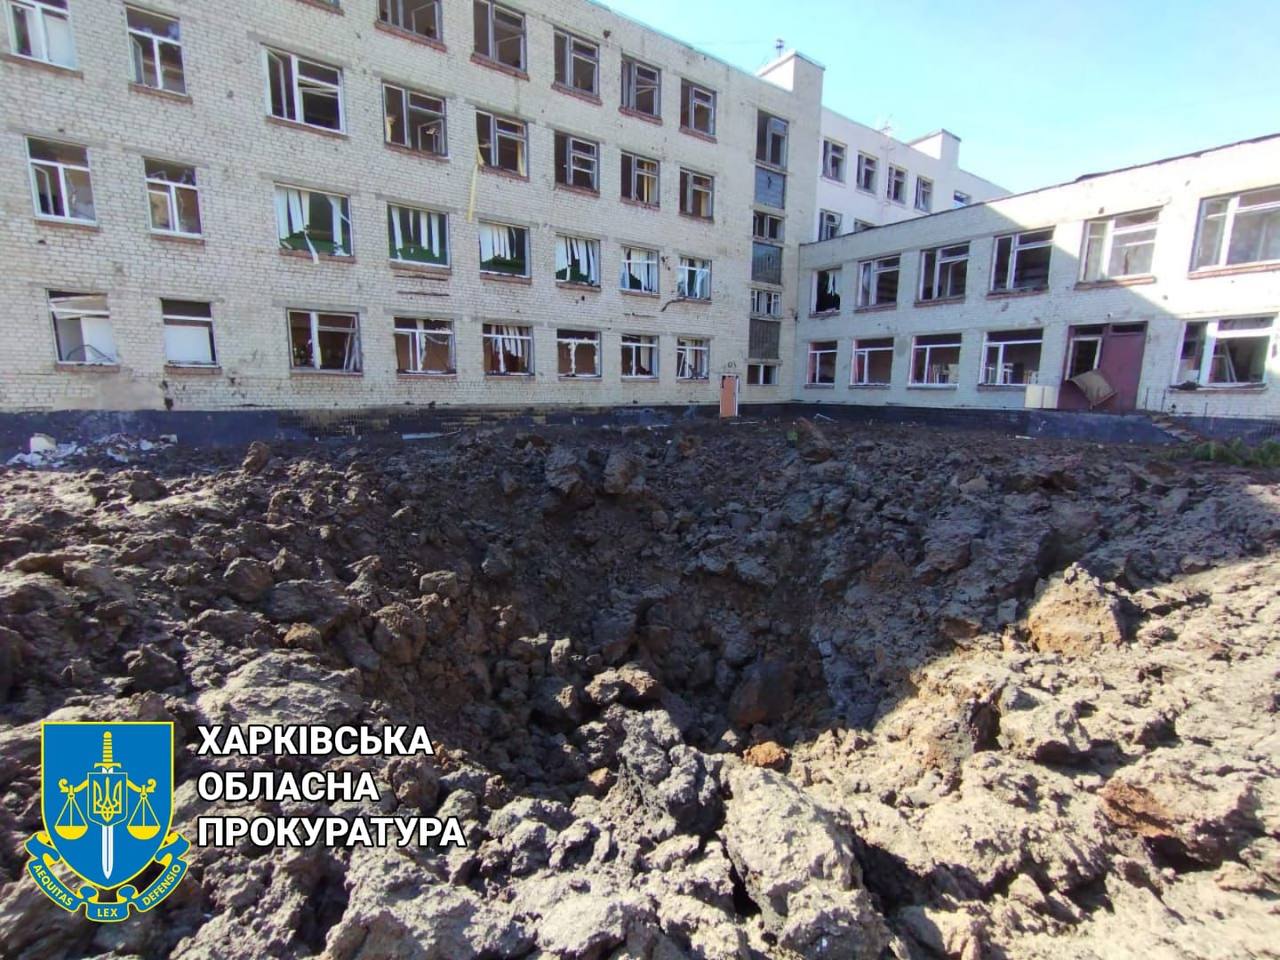 Во дворе школы в Харькове вражеский снаряд образовал 7-метровую воронку